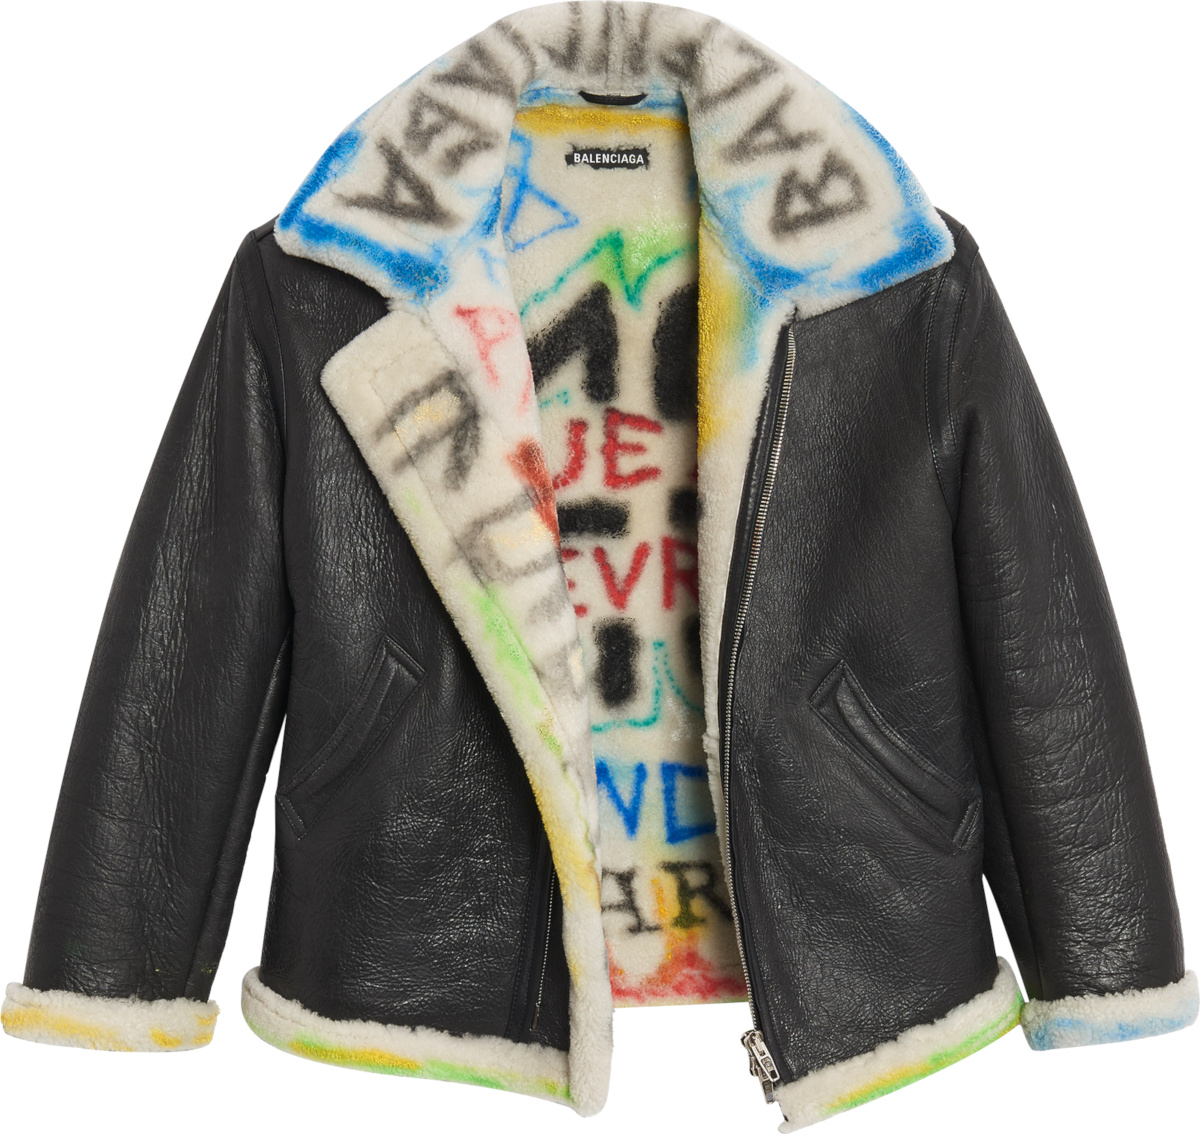 ناضج مقاطعة مروع balenciaga graffiti leather jacket - adanaklimatamiri.com